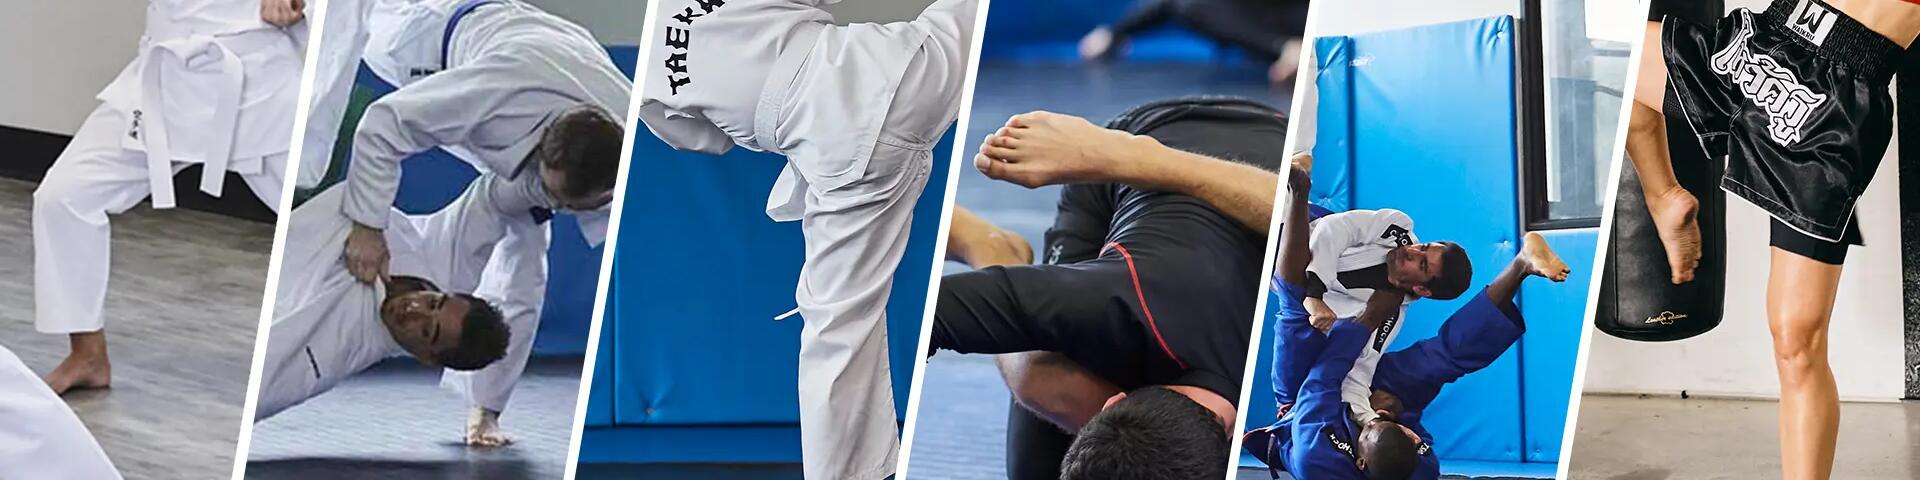 Jakie ochraniacze do karate wybrać? Co na piszczele i stopy?